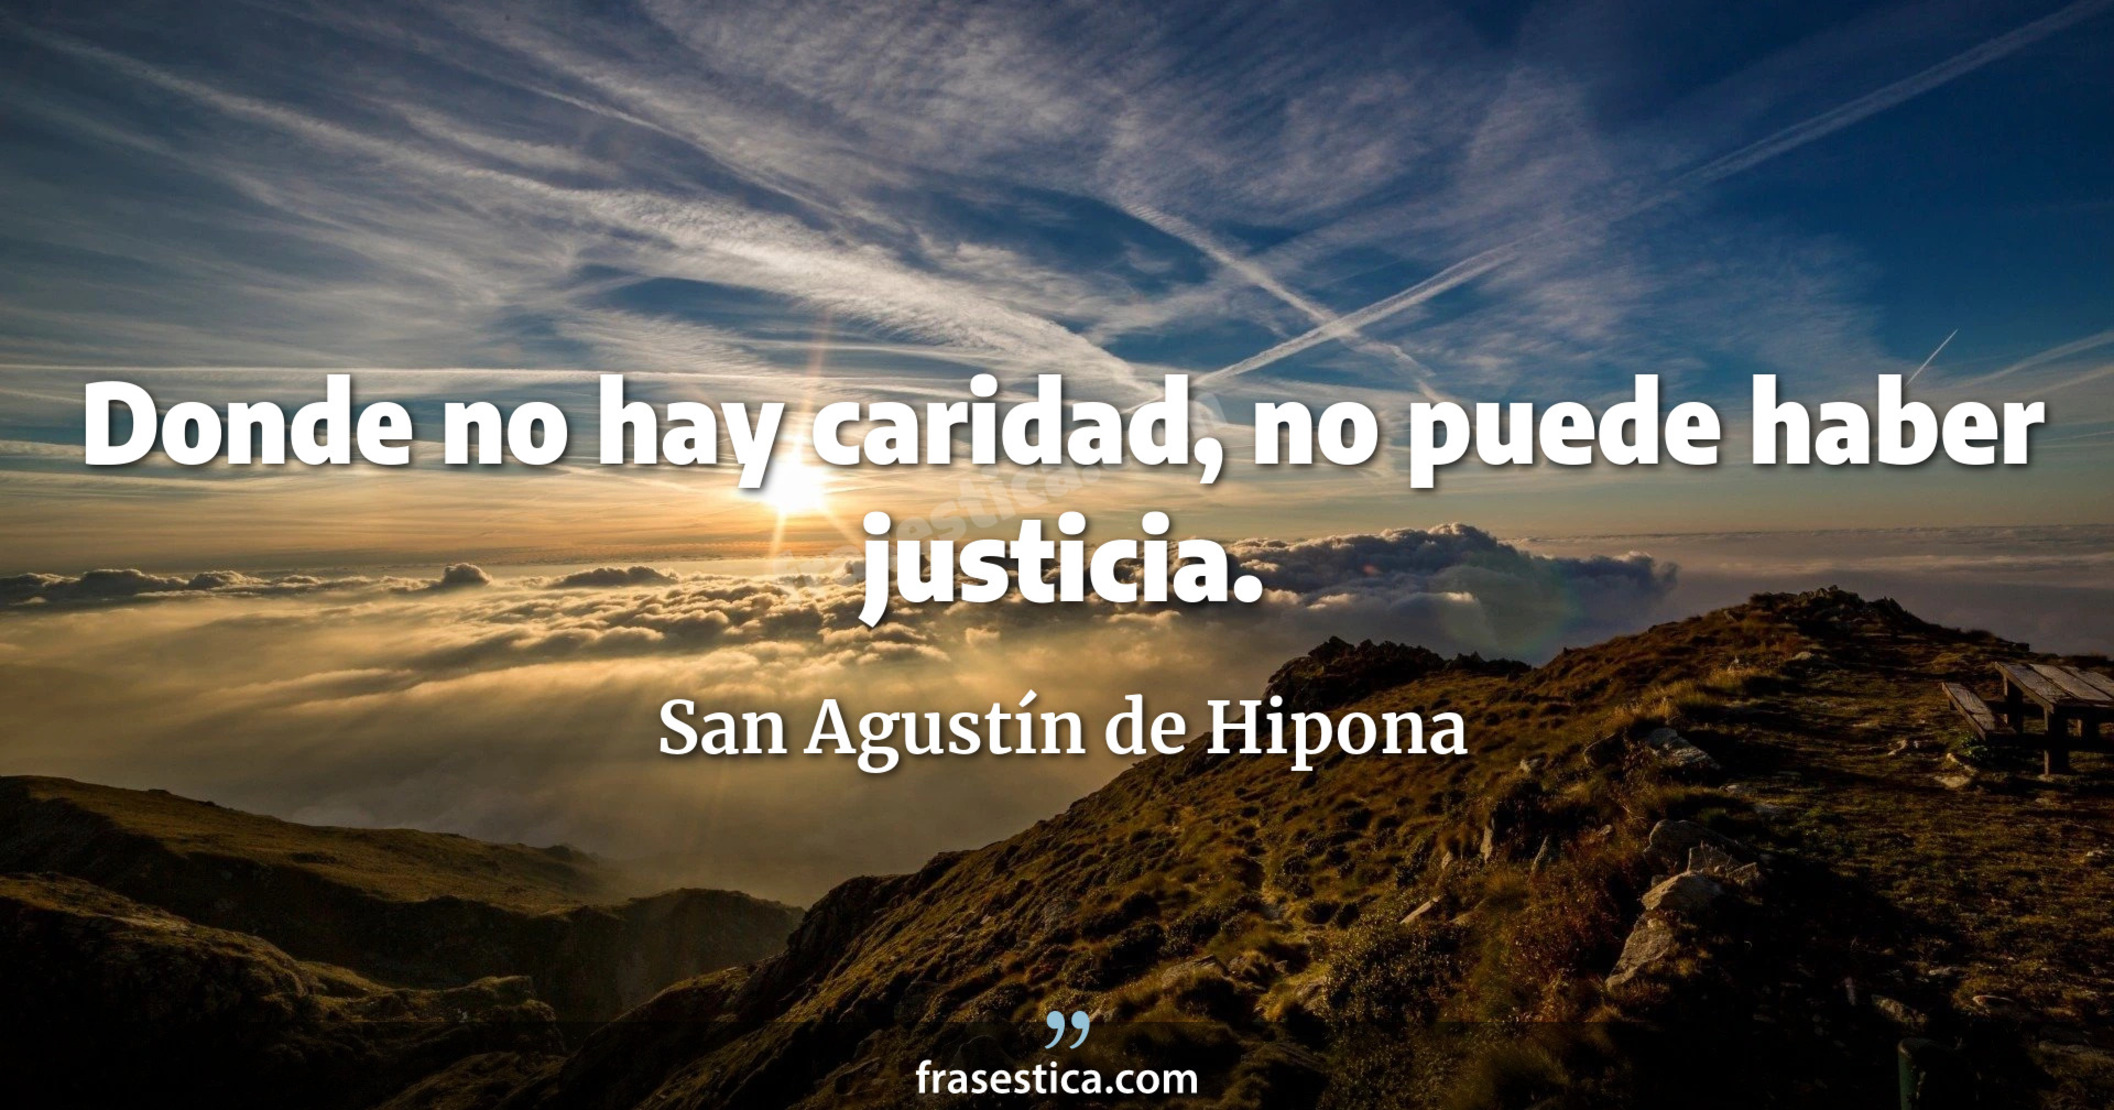 Donde no hay caridad, no puede haber justicia. - San Agustín de Hipona